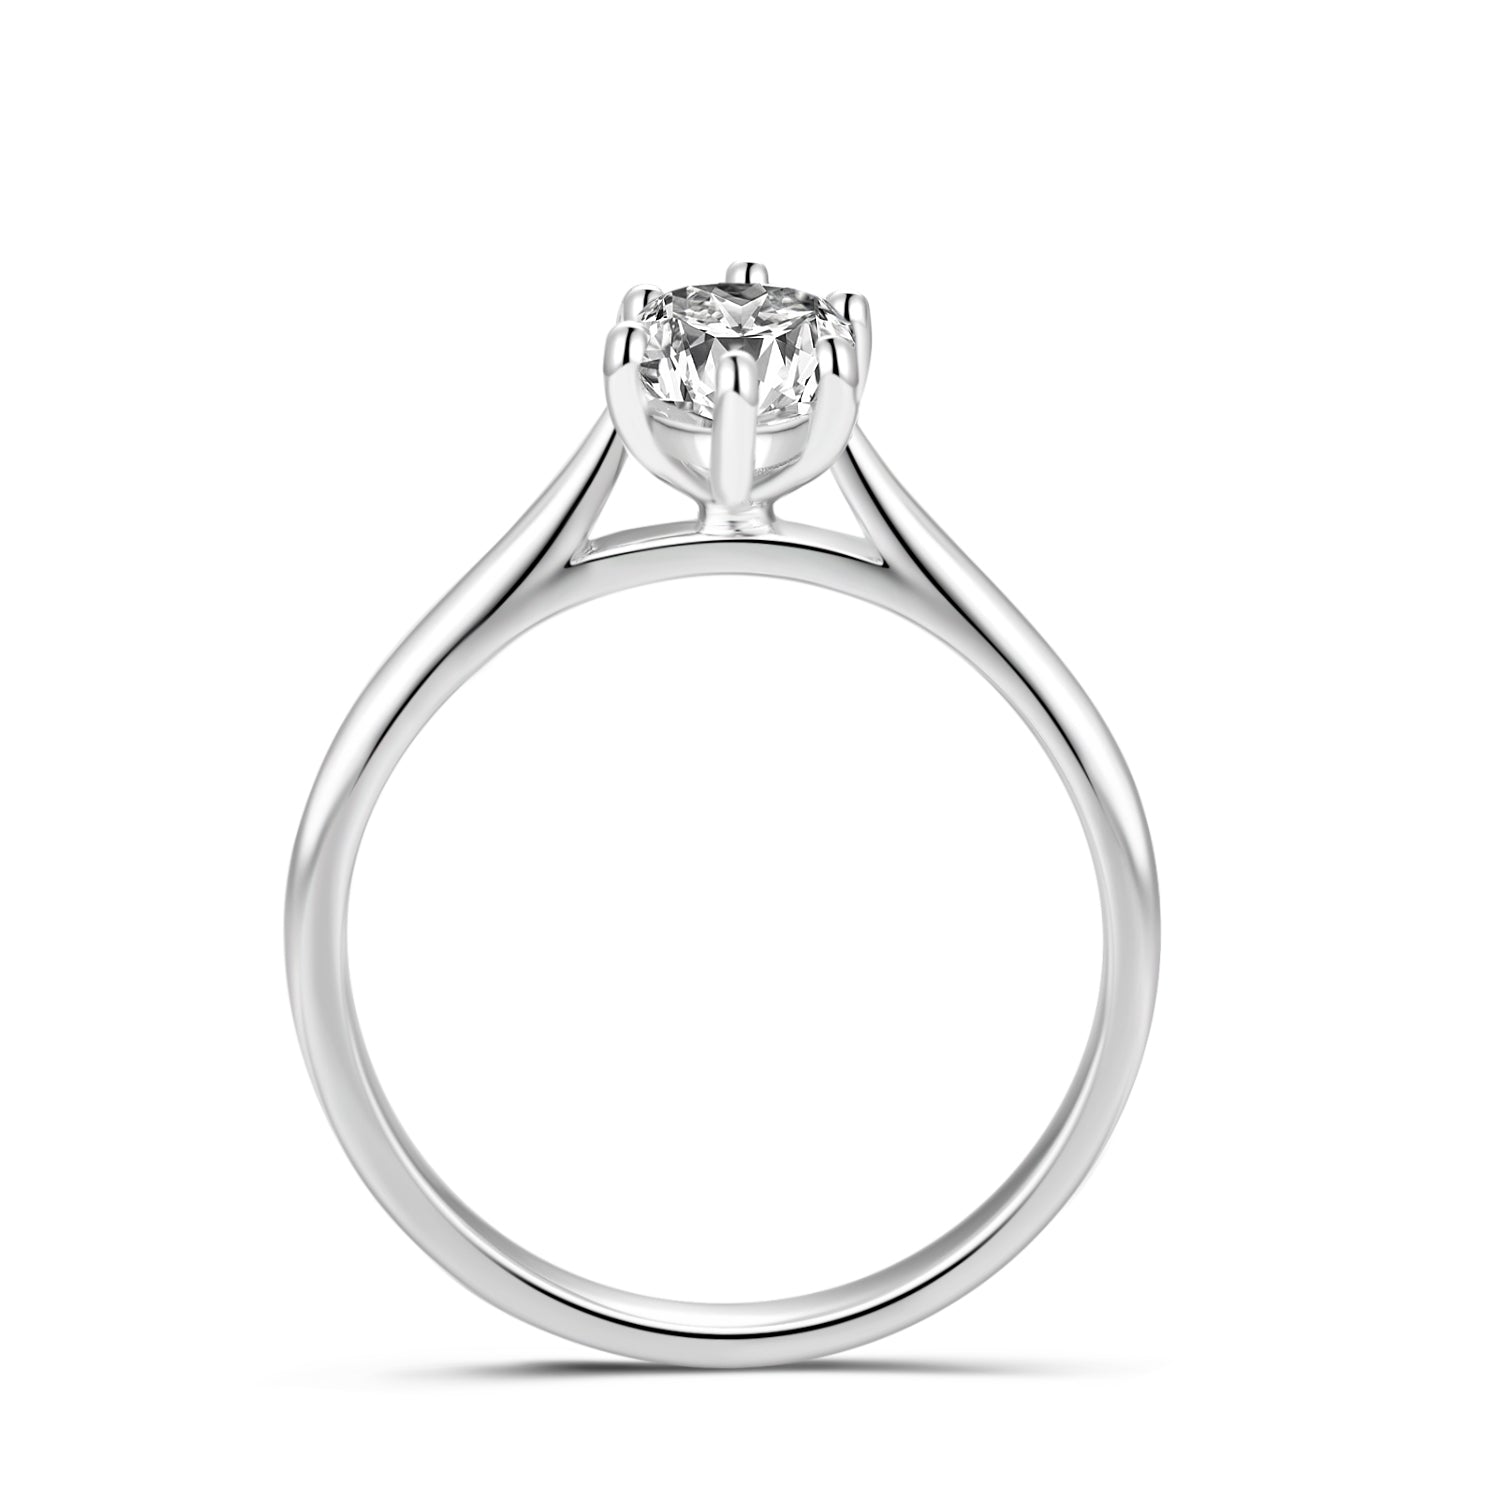 Priscilla | 1ct Solitaire Engagement Ring